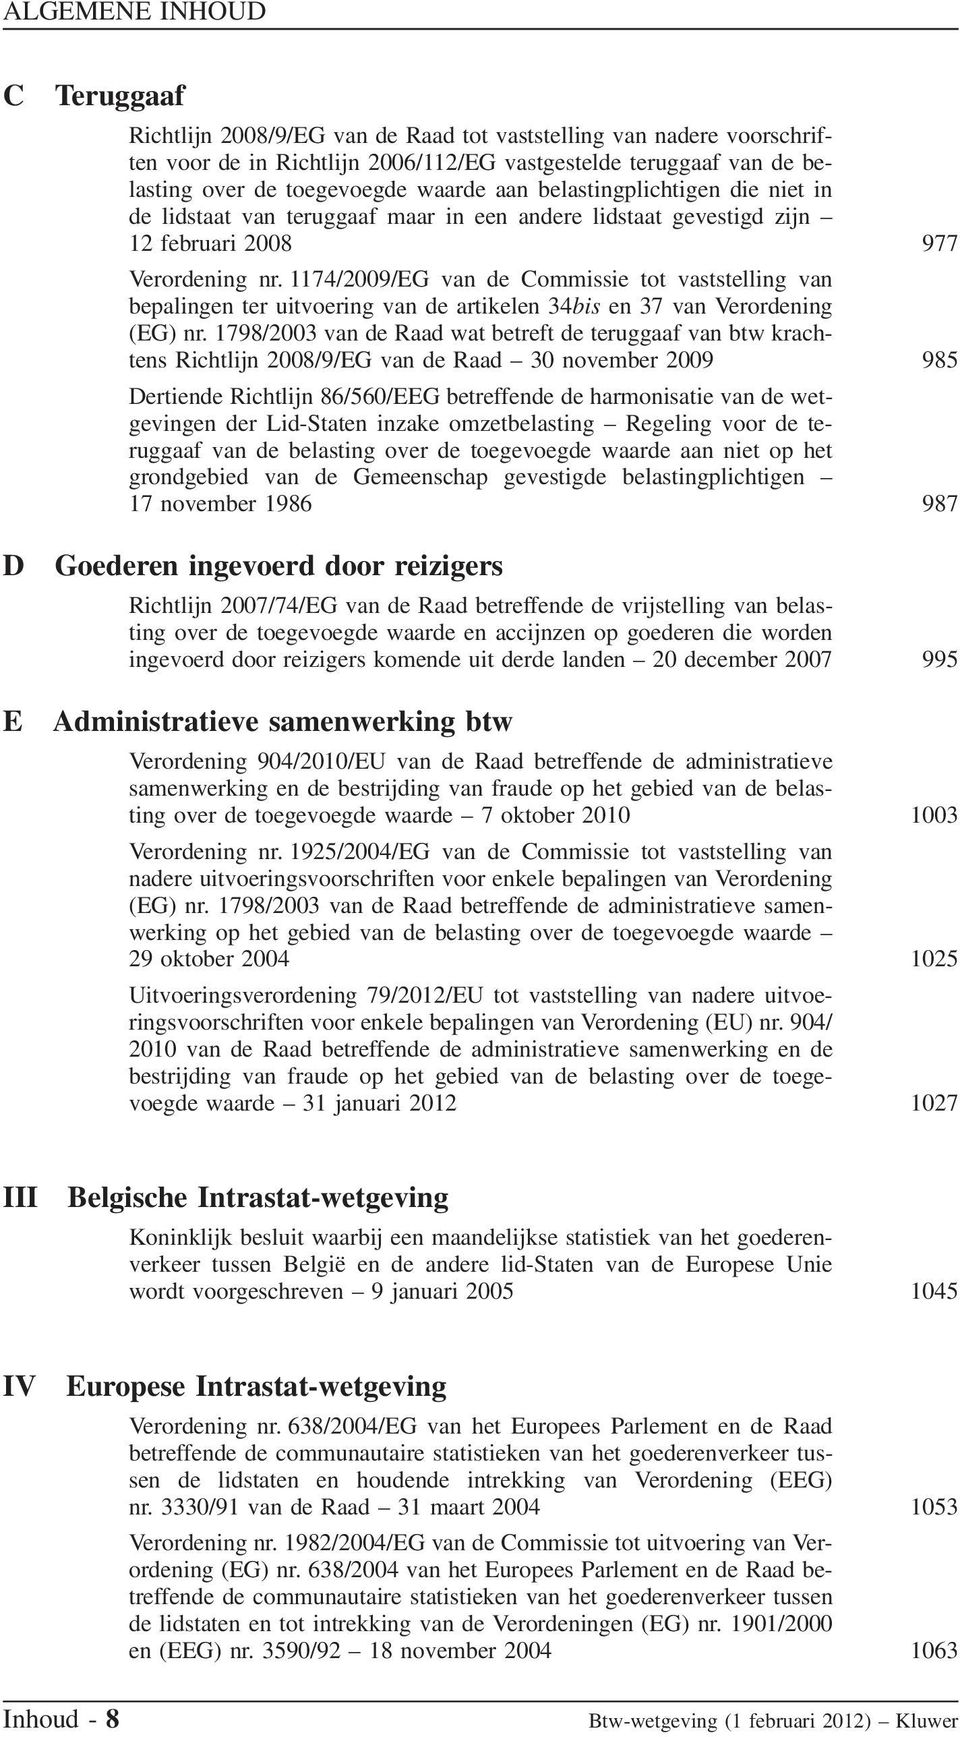 1174/2009/EG van de Commissie tot vaststelling van bepalingen ter uitvoering van de artikelen 34bis en 37 van Verordening (EG) nr.